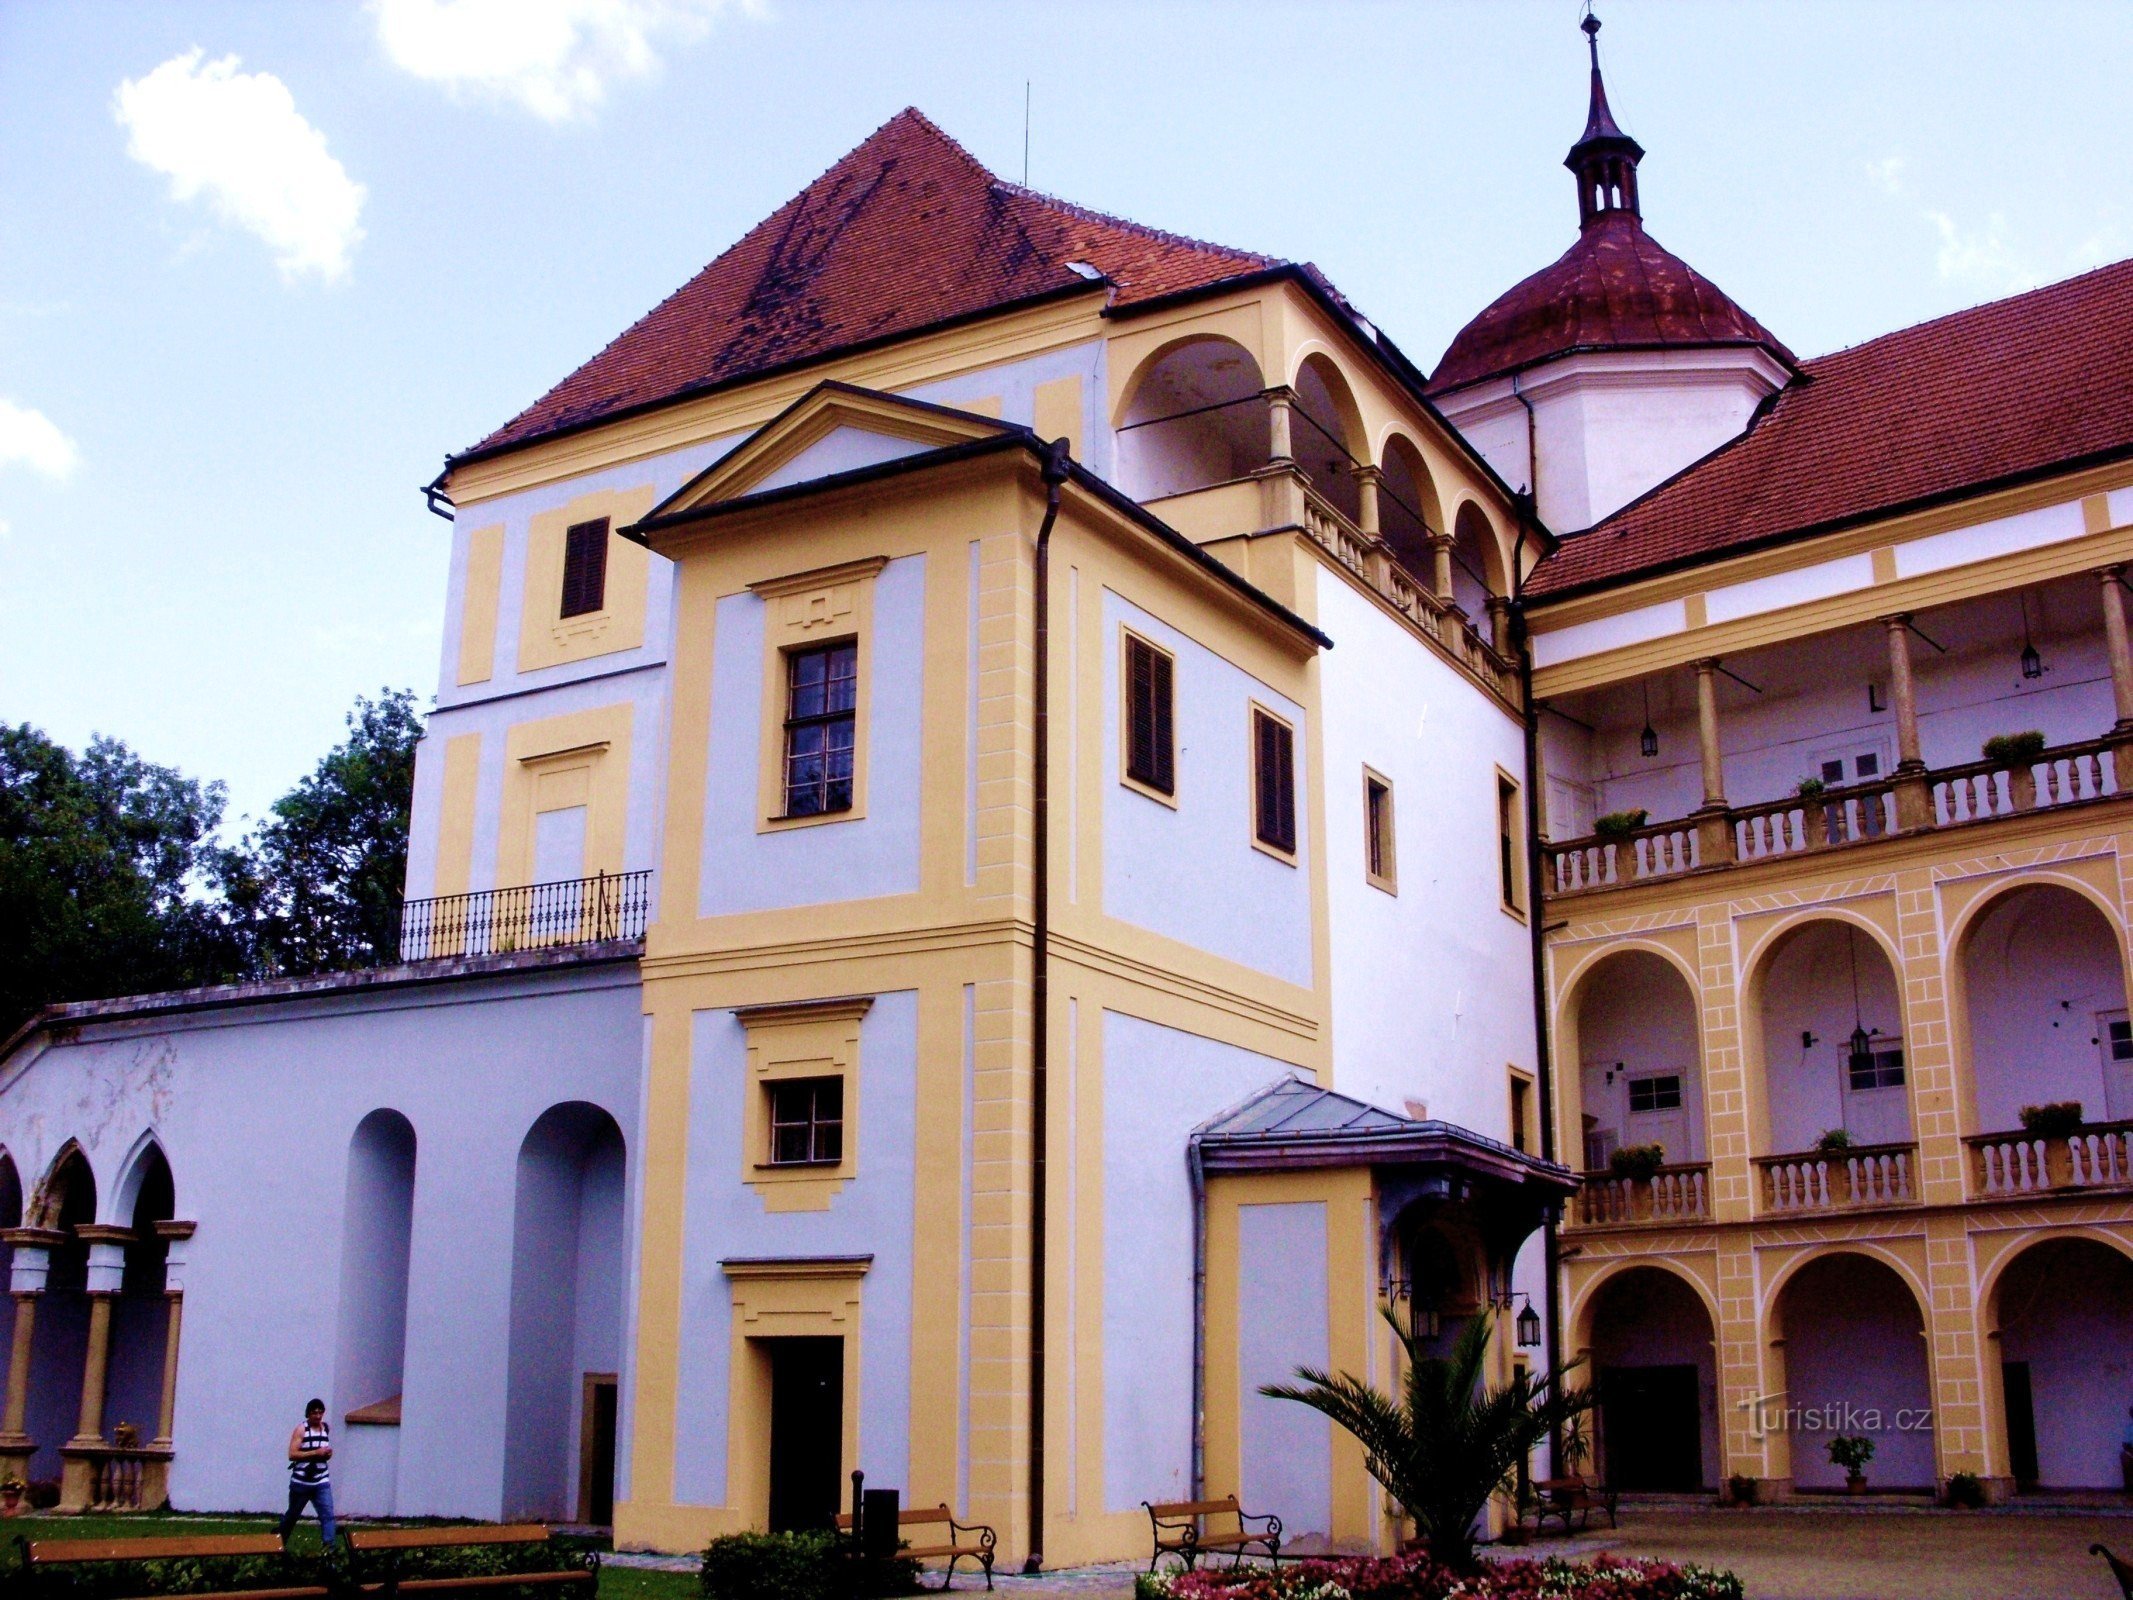 Para una experiencia en el castillo de Tovačov